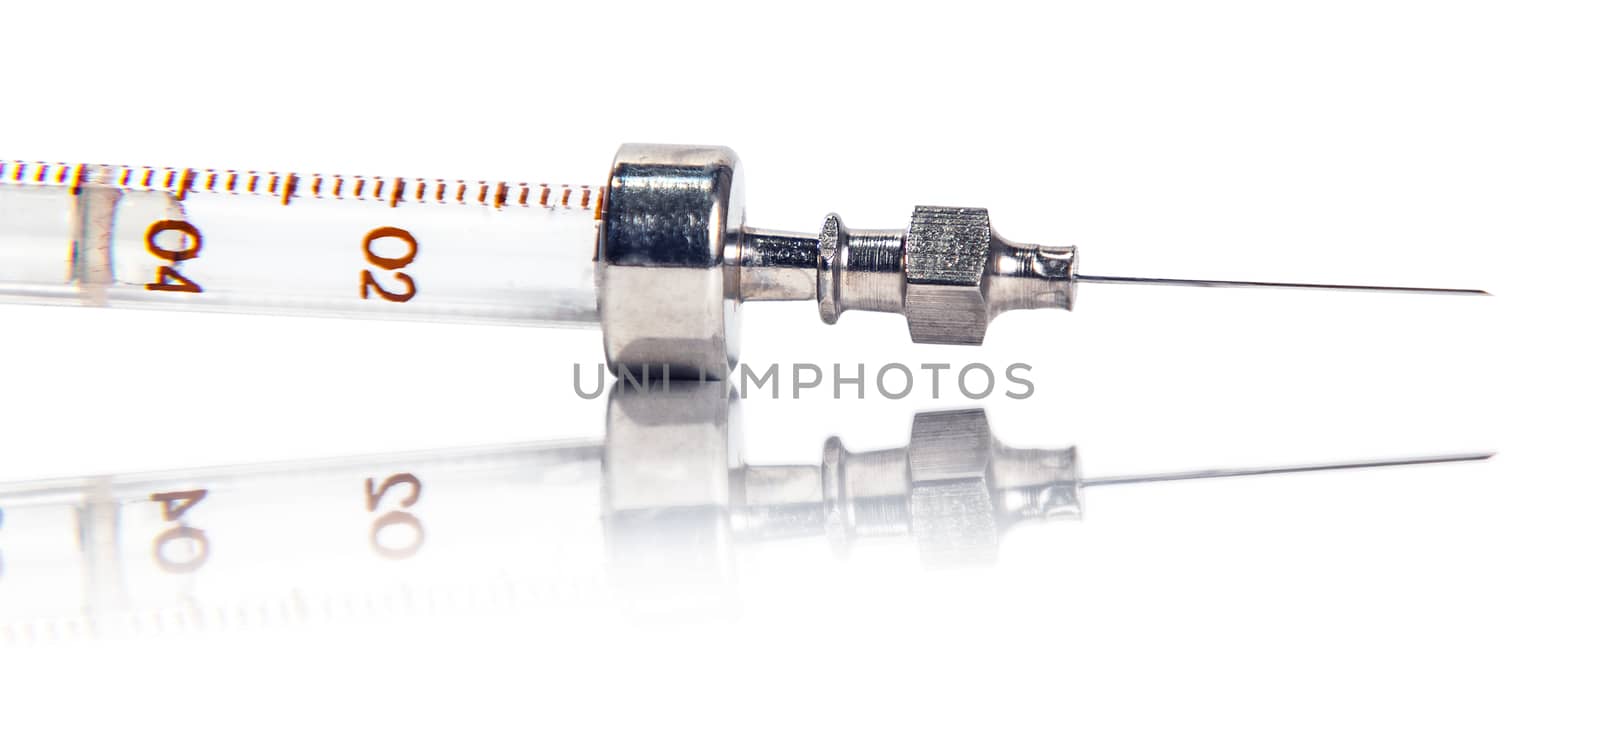 Syringe with reflection on white background